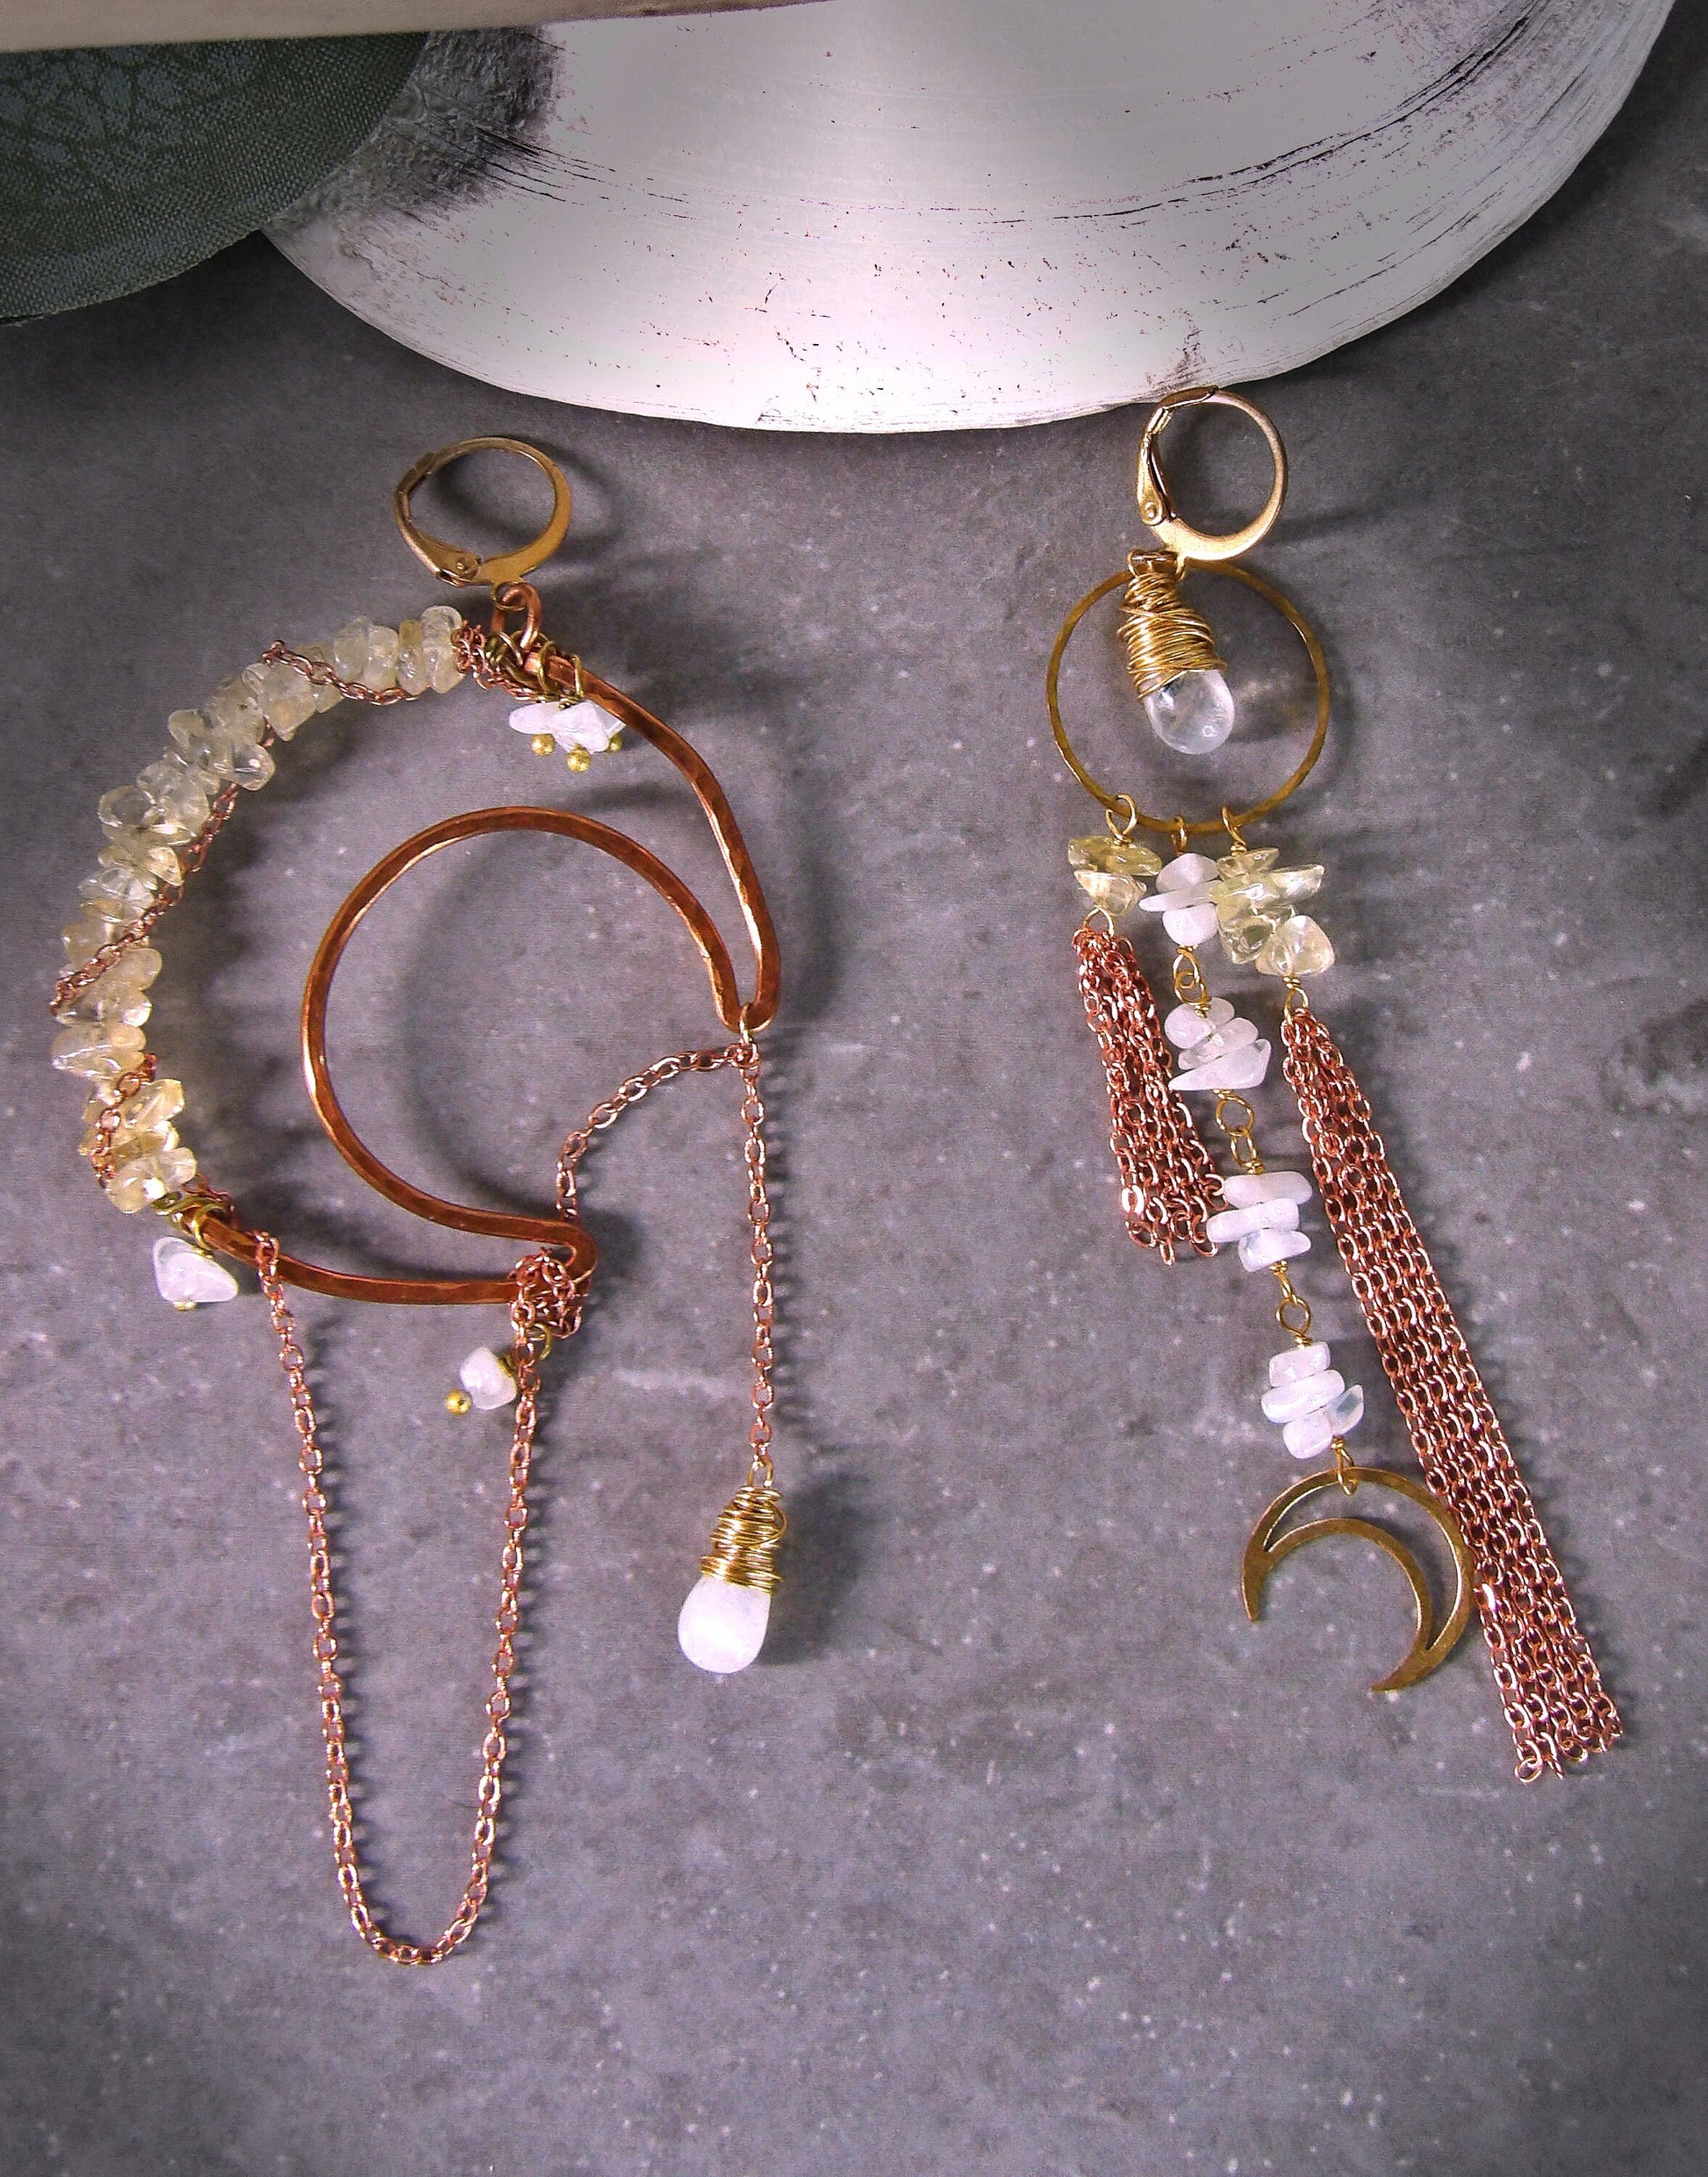 asymmetrical moon earrings - crescent moon earrings - hammered copper earrings - bohemian jewelry - goddess earrings - moonstone earrings - citrine earrings -festival outfit